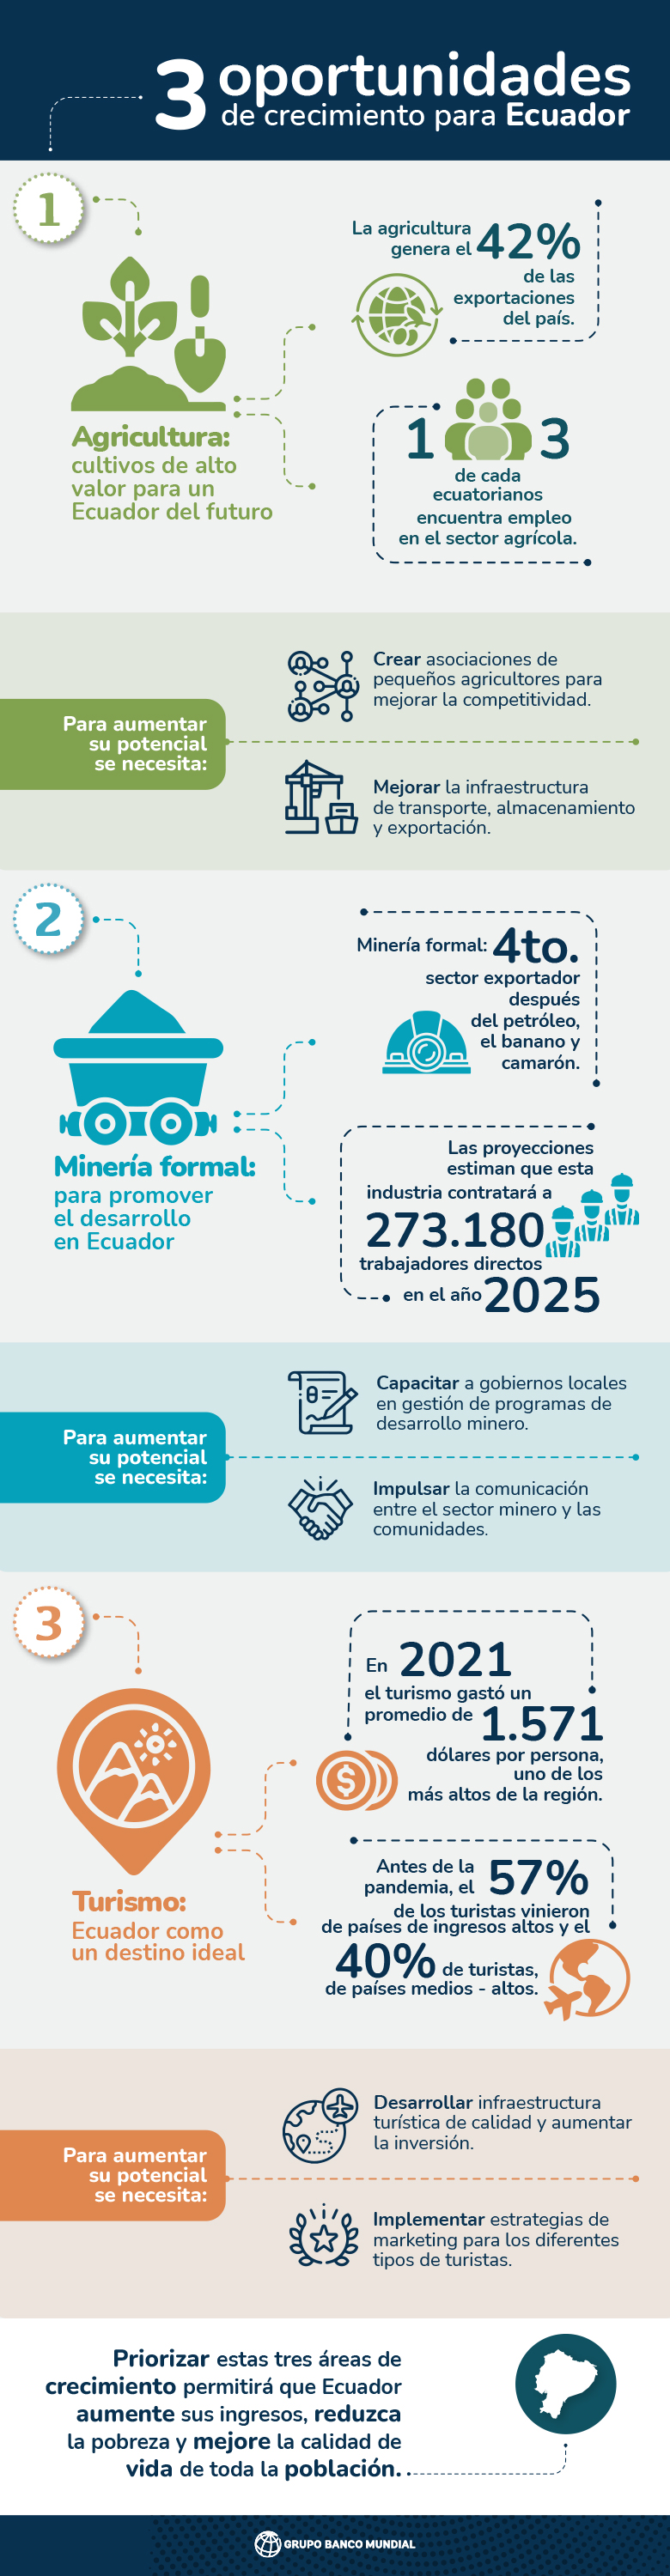 Infografía sobre Ecuador: 3 oportunidades de crecimiento, en base al informe 